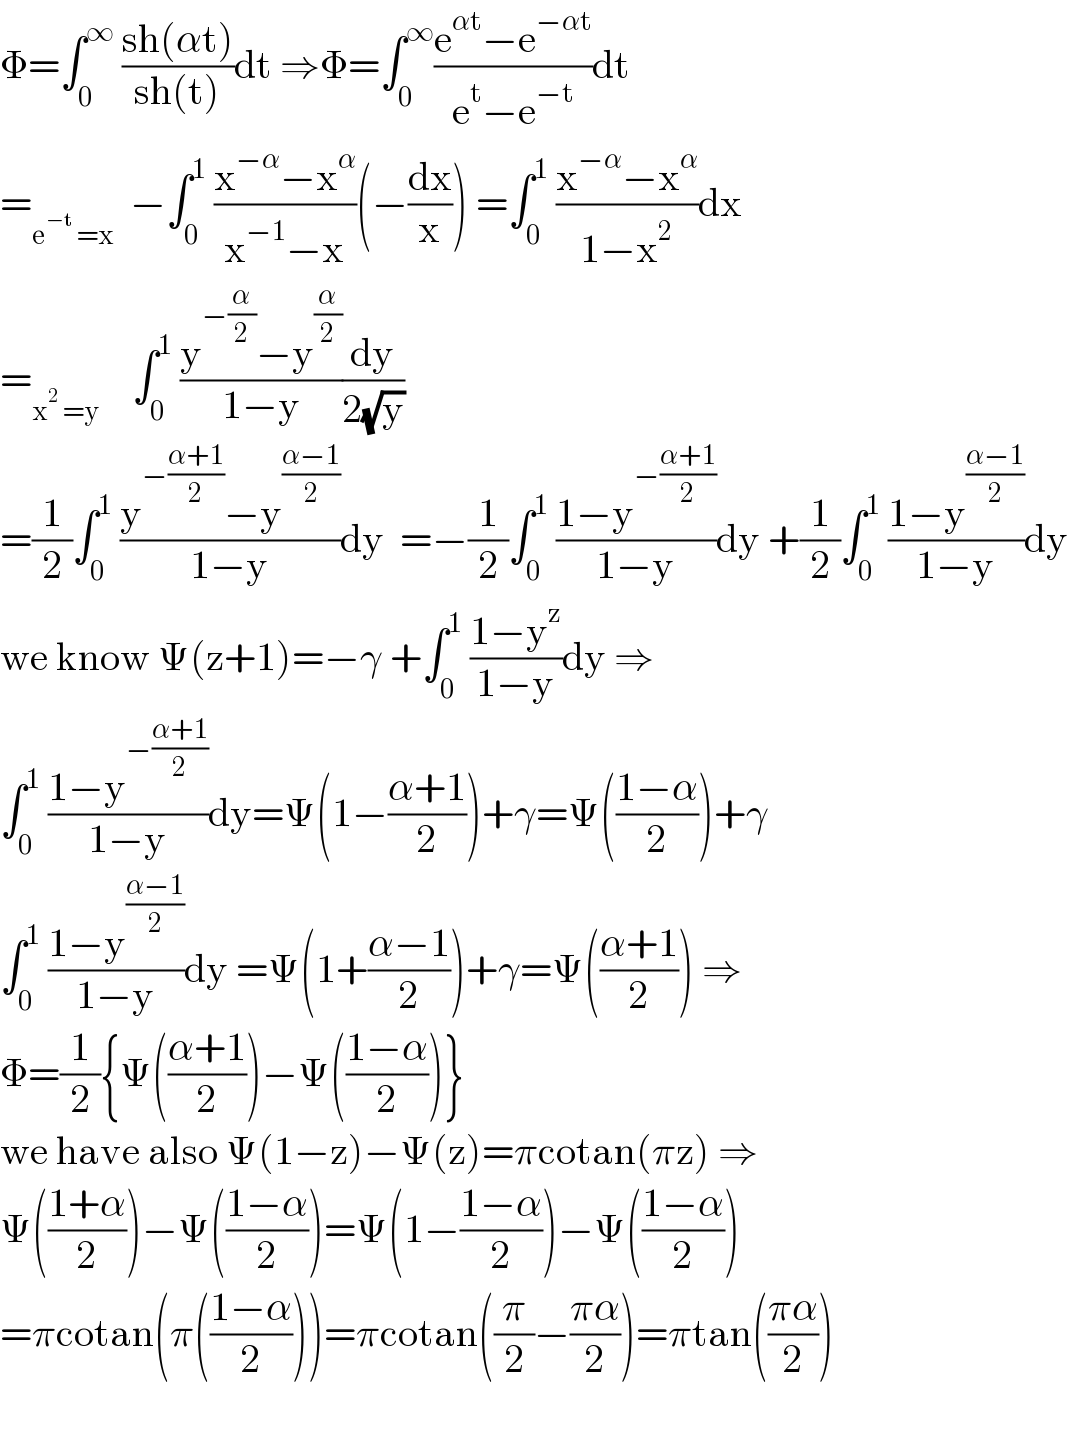 Φ=∫_0 ^∞  ((sh(αt))/(sh(t)))dt ⇒Φ=∫_0 ^∞ ((e^(αt) −e^(−αt) )/(e^t −e^(−t) ))dt  =_(e^(−t)  =x)   −∫_0 ^1  ((x^(−α) −x^α )/(x^(−1) −x))(−(dx/x)) =∫_0 ^1  ((x^(−α) −x^α )/(1−x^2 ))dx  =_(x^2  =y)     ∫_0 ^1  ((y^(−(α/2)) −y^(α/2) )/(1−y))(dy/(2(√y)))  =(1/2)∫_0 ^1  ((y^(−((α+1)/2)) −y^((α−1)/2) )/(1−y))dy  =−(1/2)∫_0 ^1  ((1−y^(−((α+1)/2)) )/(1−y))dy +(1/2)∫_0 ^1  ((1−y^((α−1)/2) )/(1−y))dy  we know Ψ(z+1)=−γ +∫_0 ^1  ((1−y^z )/(1−y))dy ⇒  ∫_0 ^1  ((1−y^(−((α+1)/2)) )/(1−y))dy=Ψ(1−((α+1)/2))+γ=Ψ(((1−α)/2))+γ  ∫_0 ^1  ((1−y^((α−1)/2) )/(1−y))dy =Ψ(1+((α−1)/2))+γ=Ψ(((α+1)/2)) ⇒  Φ=(1/2){Ψ(((α+1)/2))−Ψ(((1−α)/2))}  we have also Ψ(1−z)−Ψ(z)=πcotan(πz) ⇒  Ψ(((1+α)/2))−Ψ(((1−α)/2))=Ψ(1−((1−α)/2))−Ψ(((1−α)/2))  =πcotan(π(((1−α)/2)))=πcotan((π/2)−((πα)/2))=πtan(((πα)/2))    